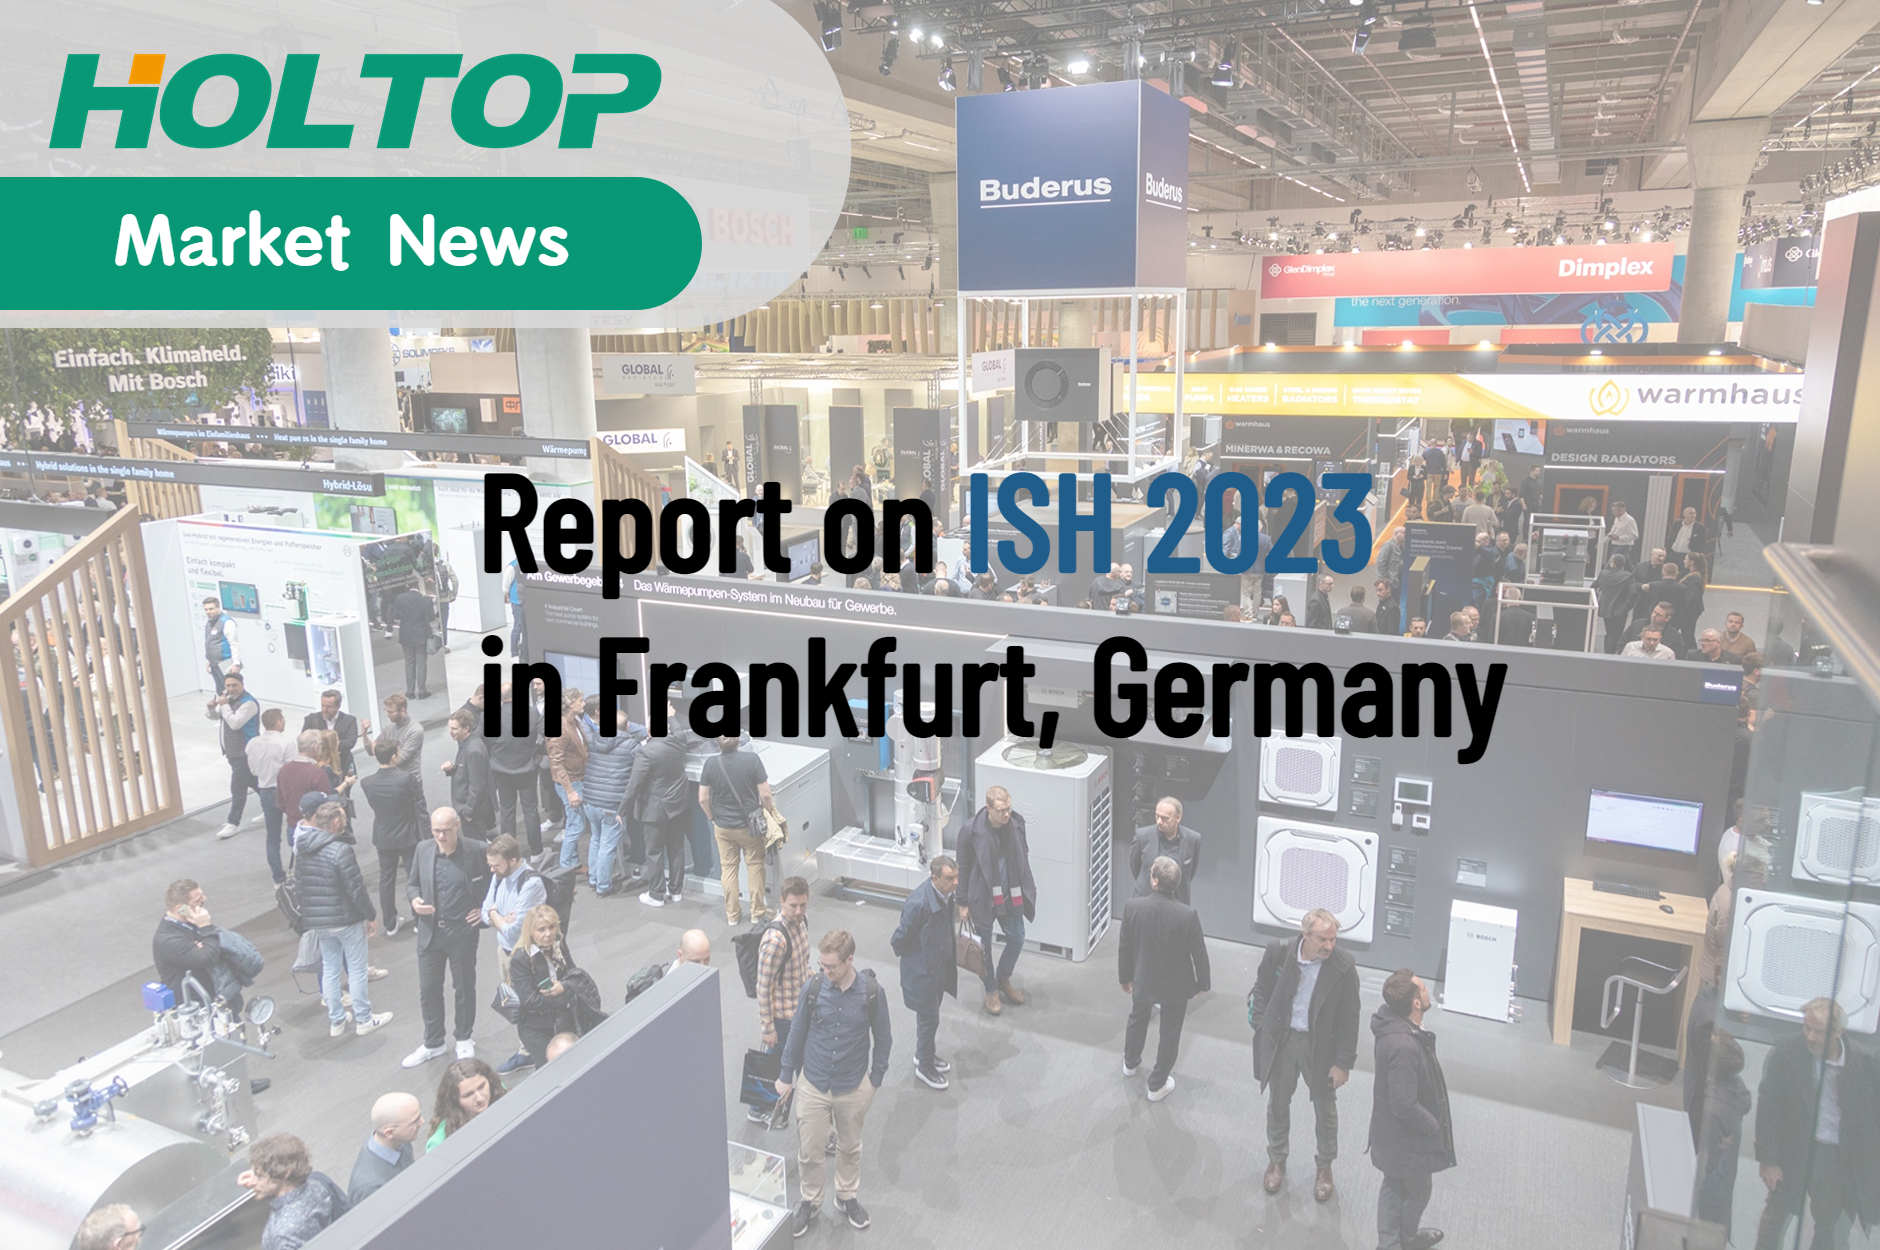 Rewolucja w europejskim ciepłownictwie – relacja z targów ISH 2023 we Frankfurcie w Niemczech